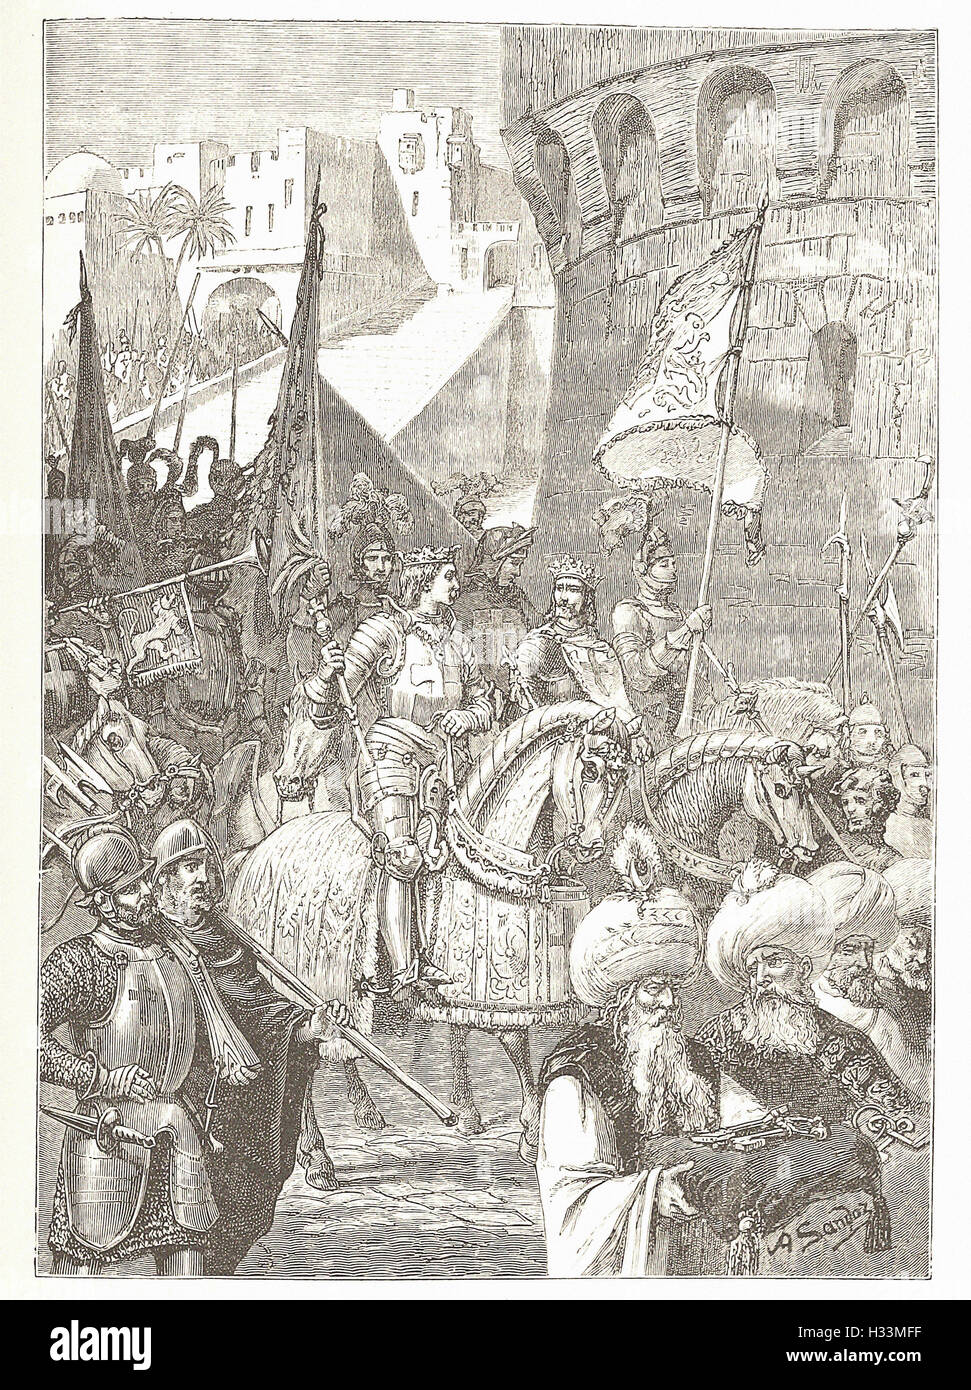 Entrada triunfal de RTCHARD I. y Philip Augustus en Acre - desde 'Cassell's ilustra la historia universal' - 1882 Foto de stock